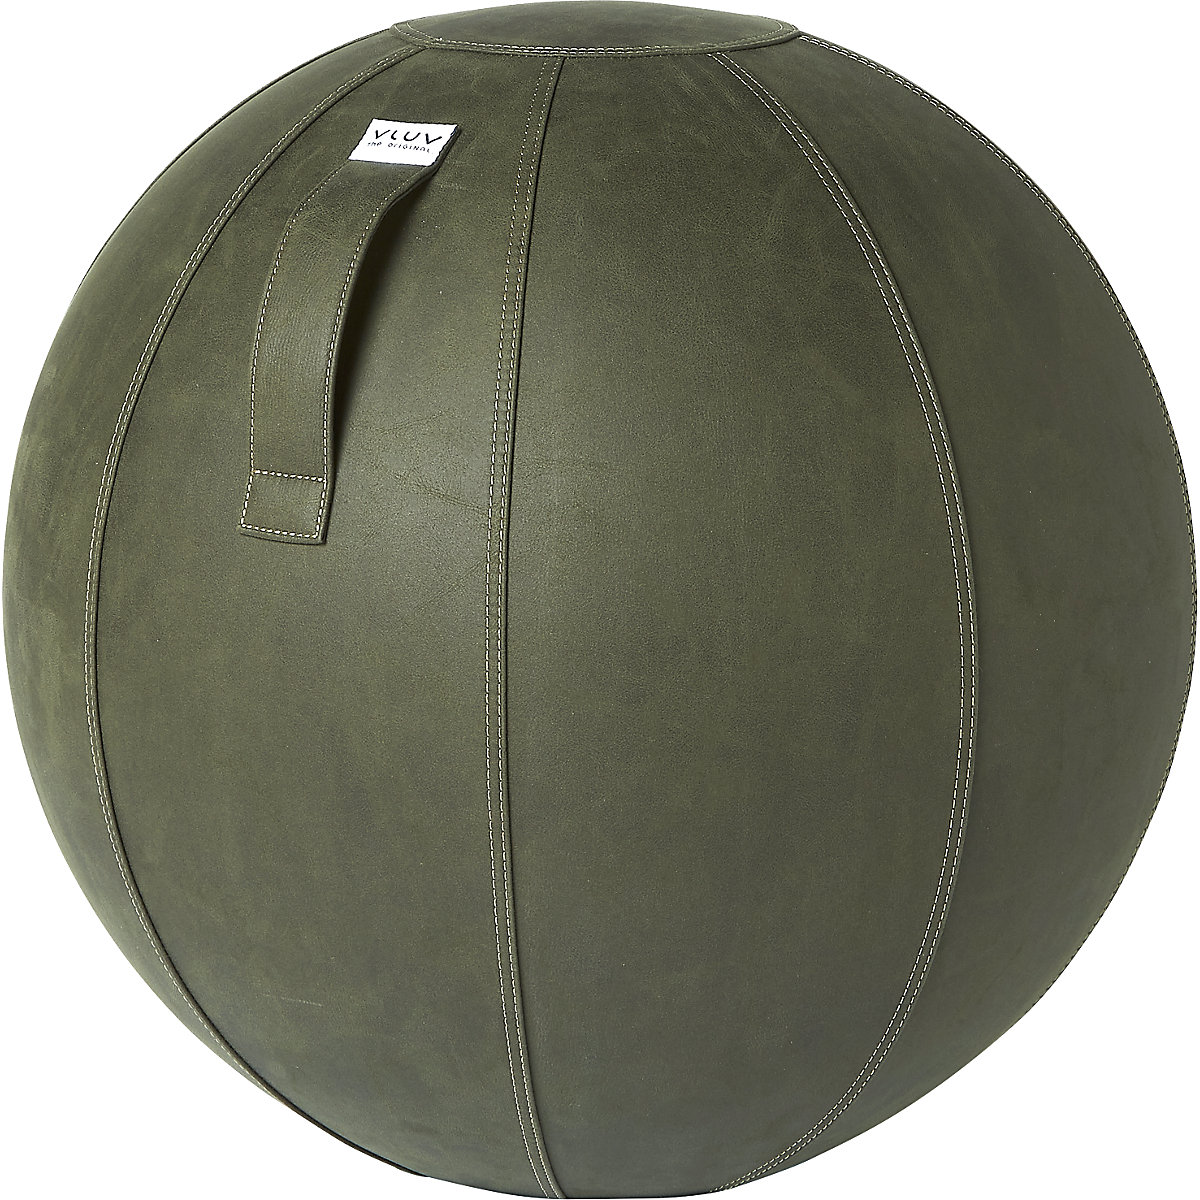 Ballon suisse VEGA – VLUV, similicuir végétalien, 600 – 650 mm, vert mousse-9